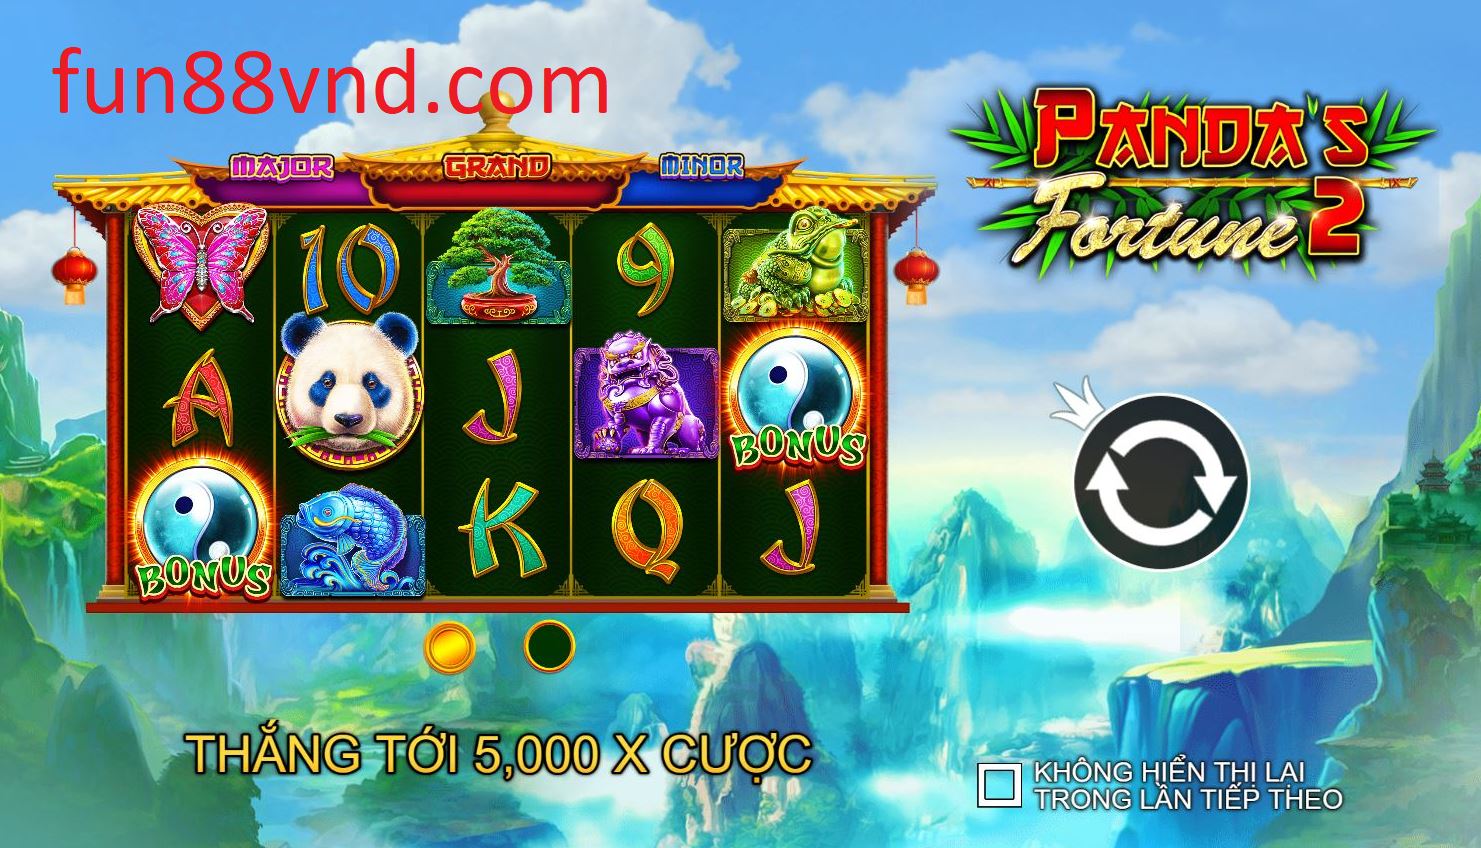 Giới thiệu và cách chơi cơ bản Vận May Panda 2 tại Fun88